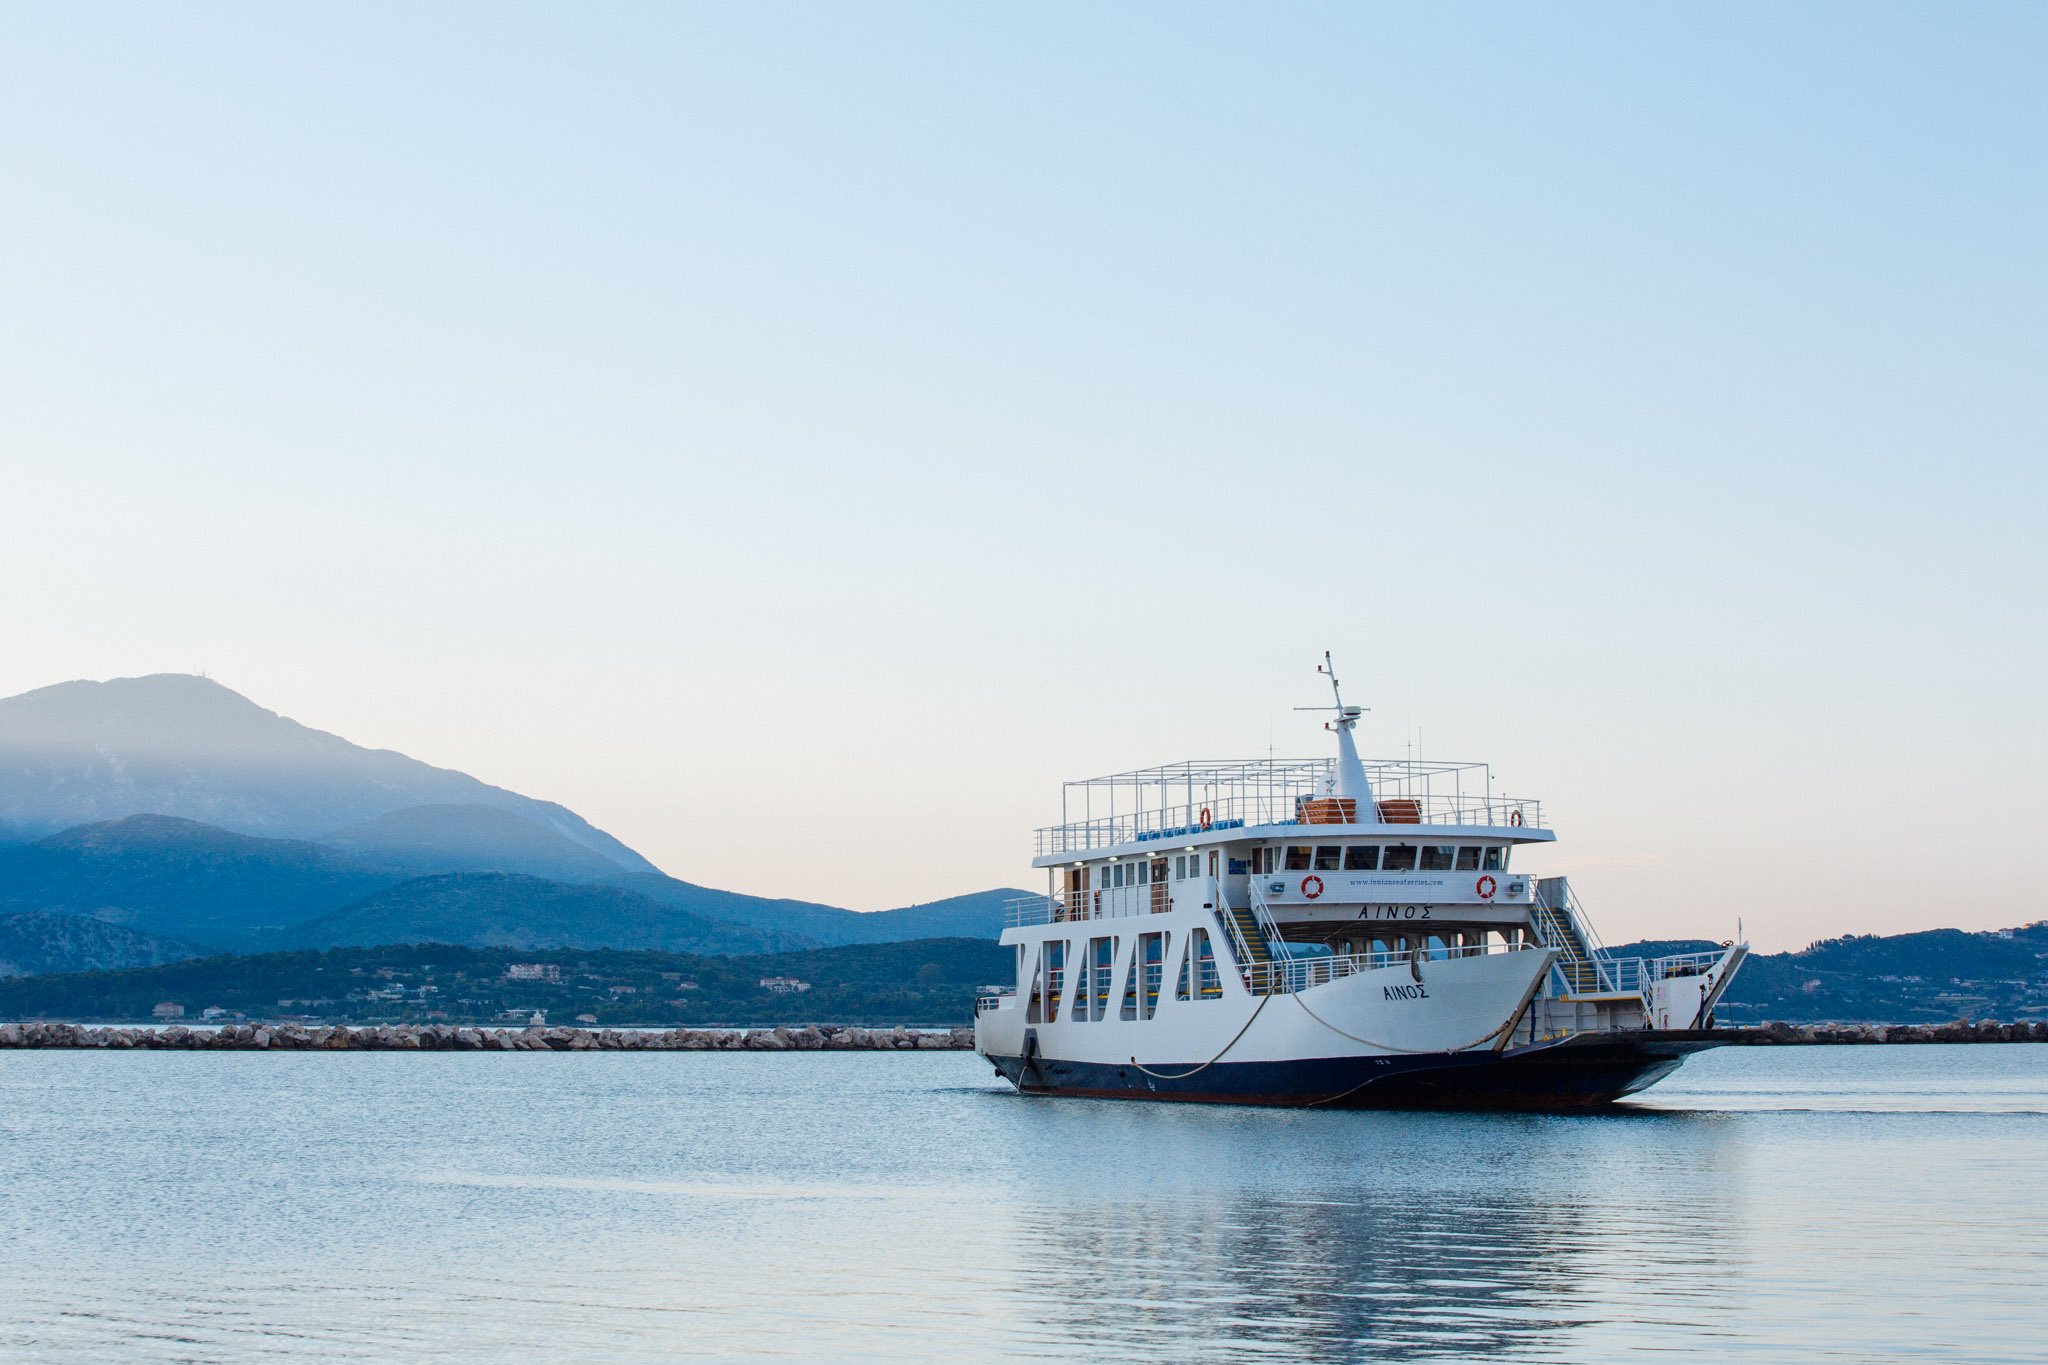 Catch the ferry to Argostoli